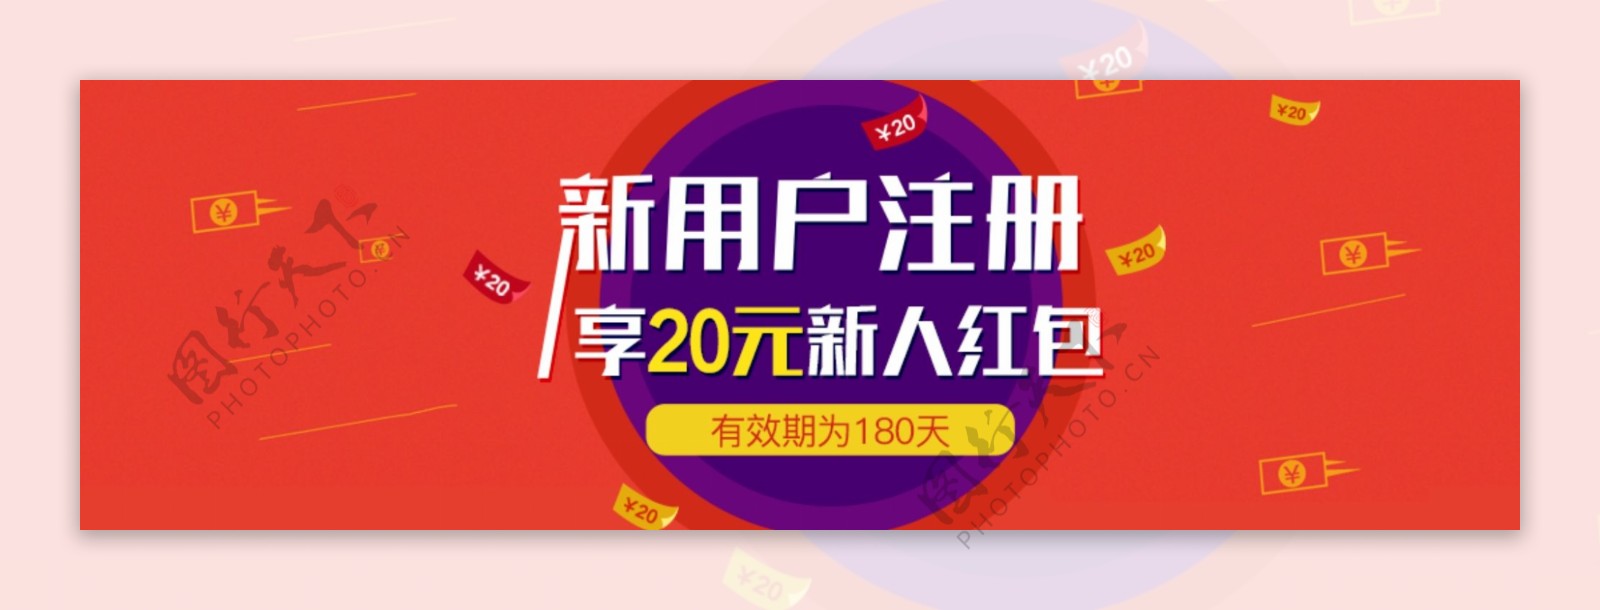 新用户注册红包banner活动海报